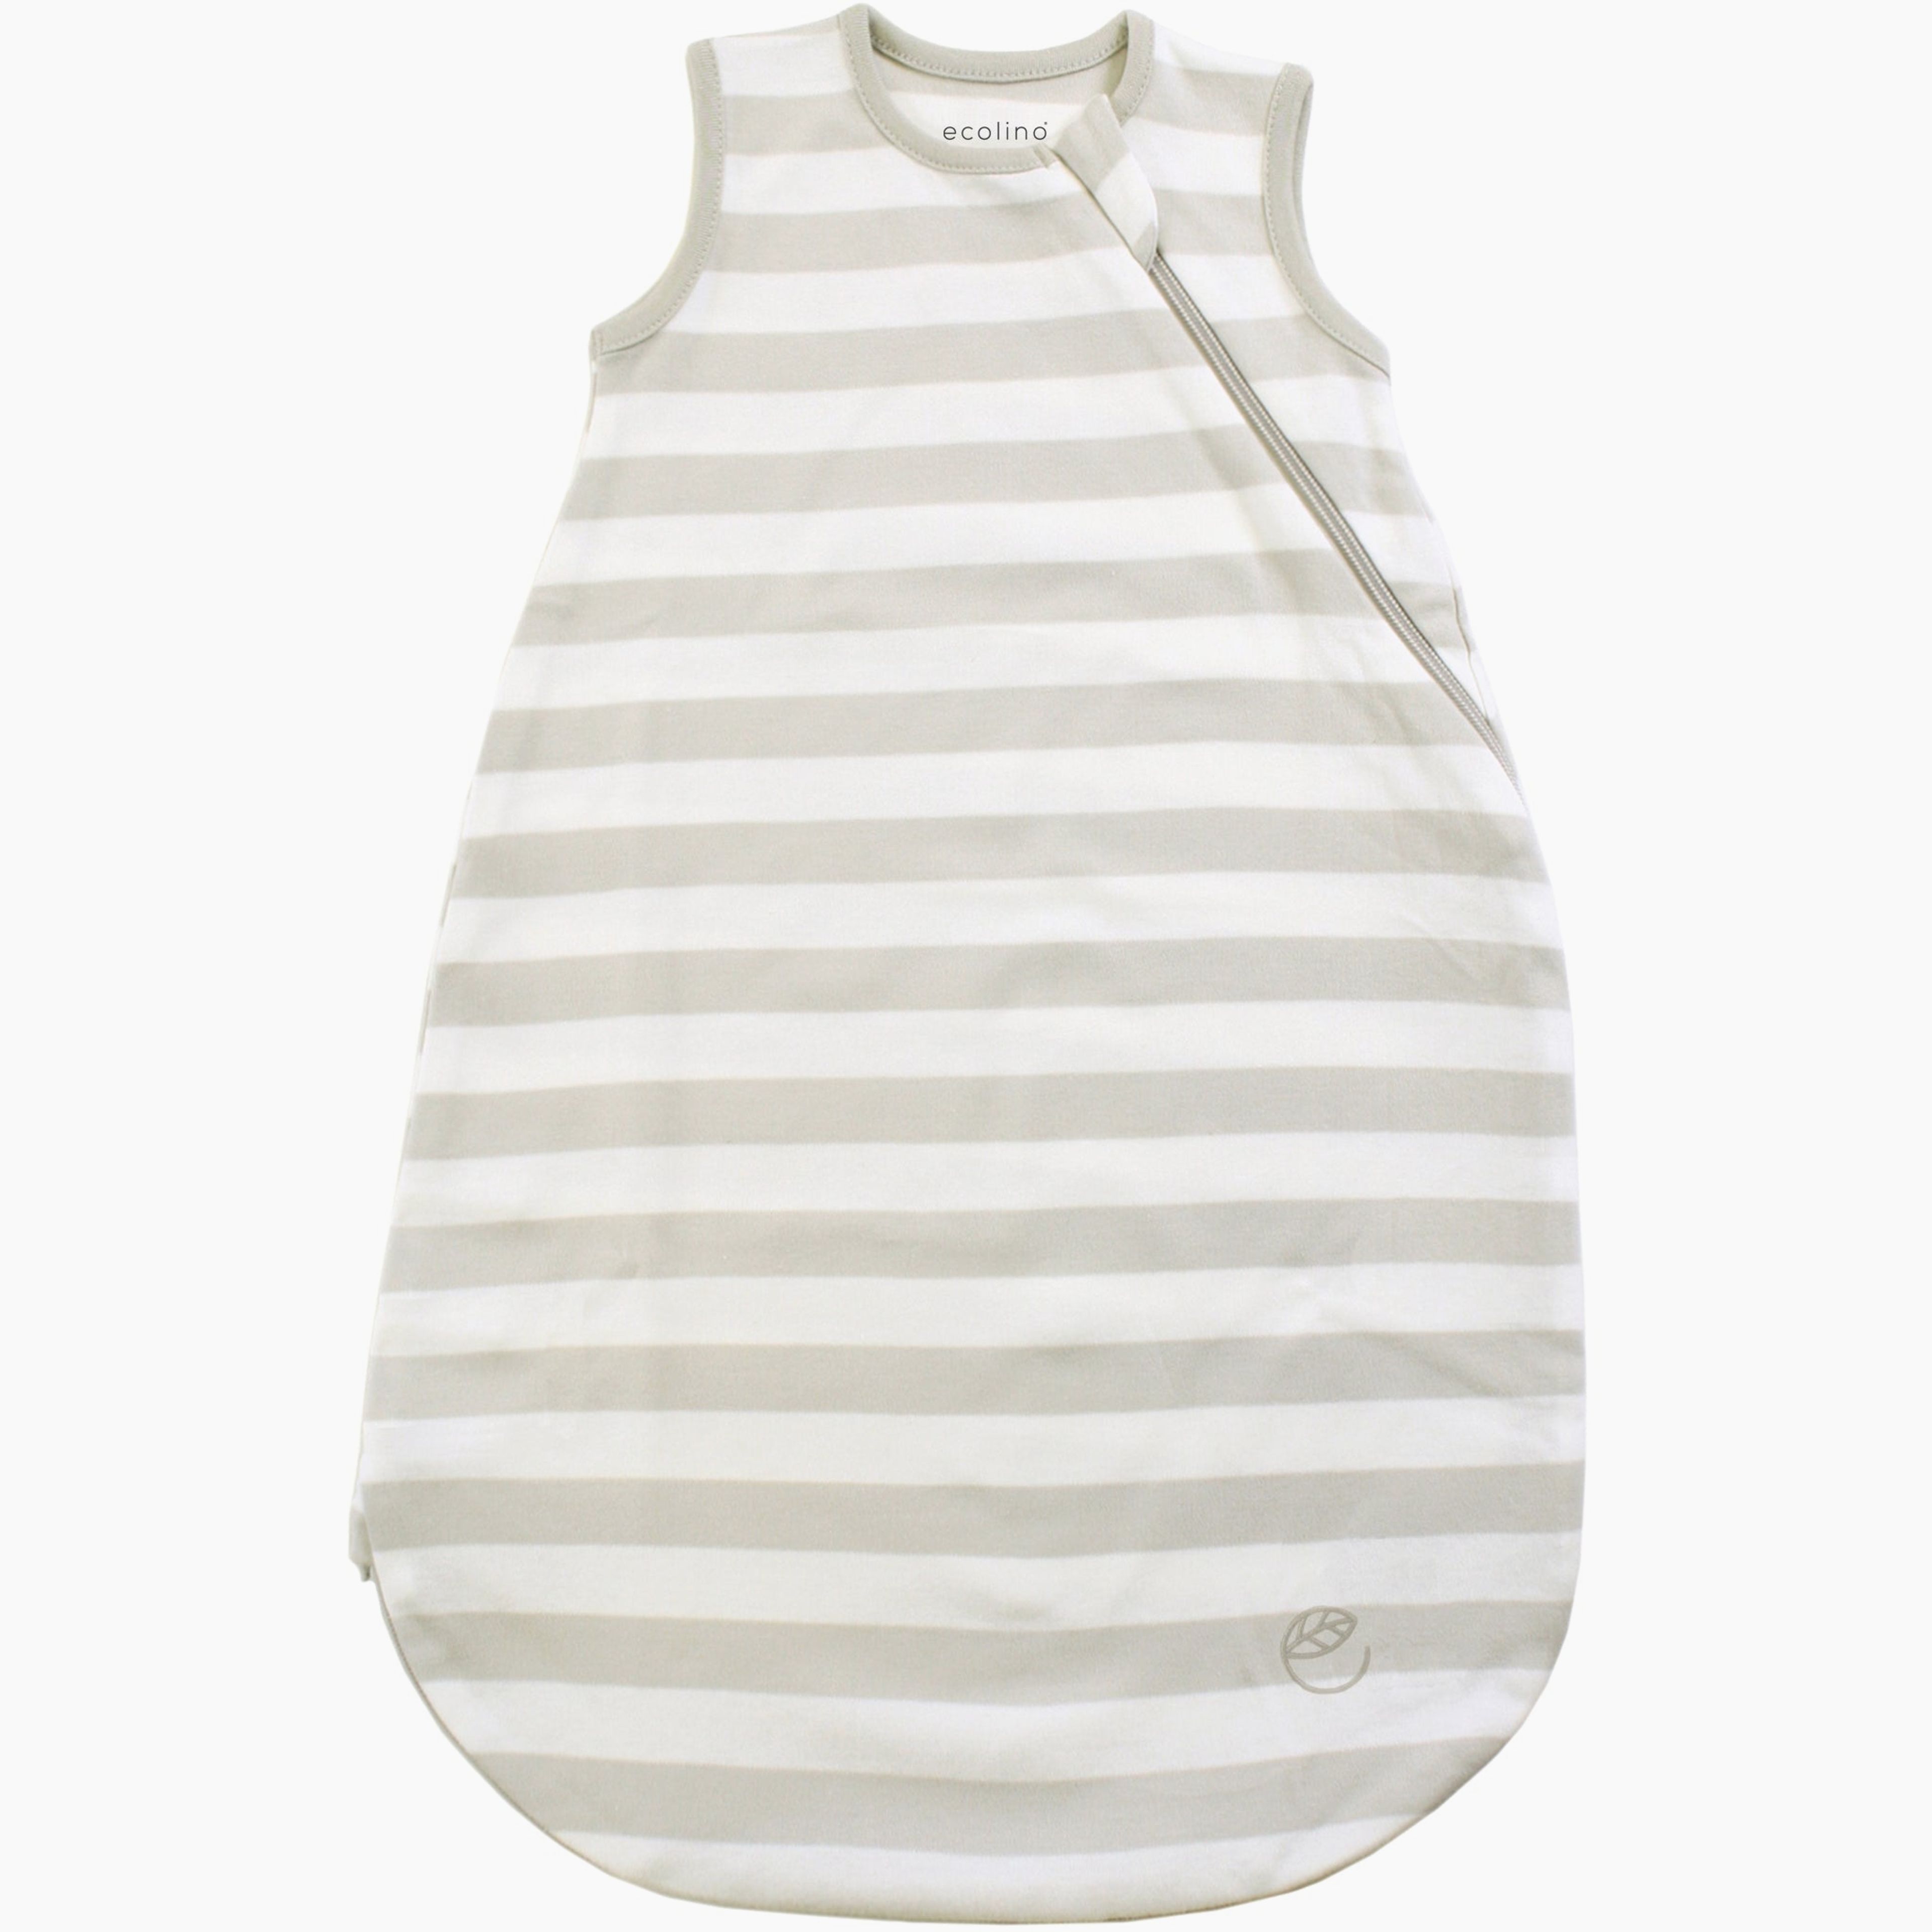 Ecolino Organic Cotton Basic Baby Sleep Bag or Sack, Gray